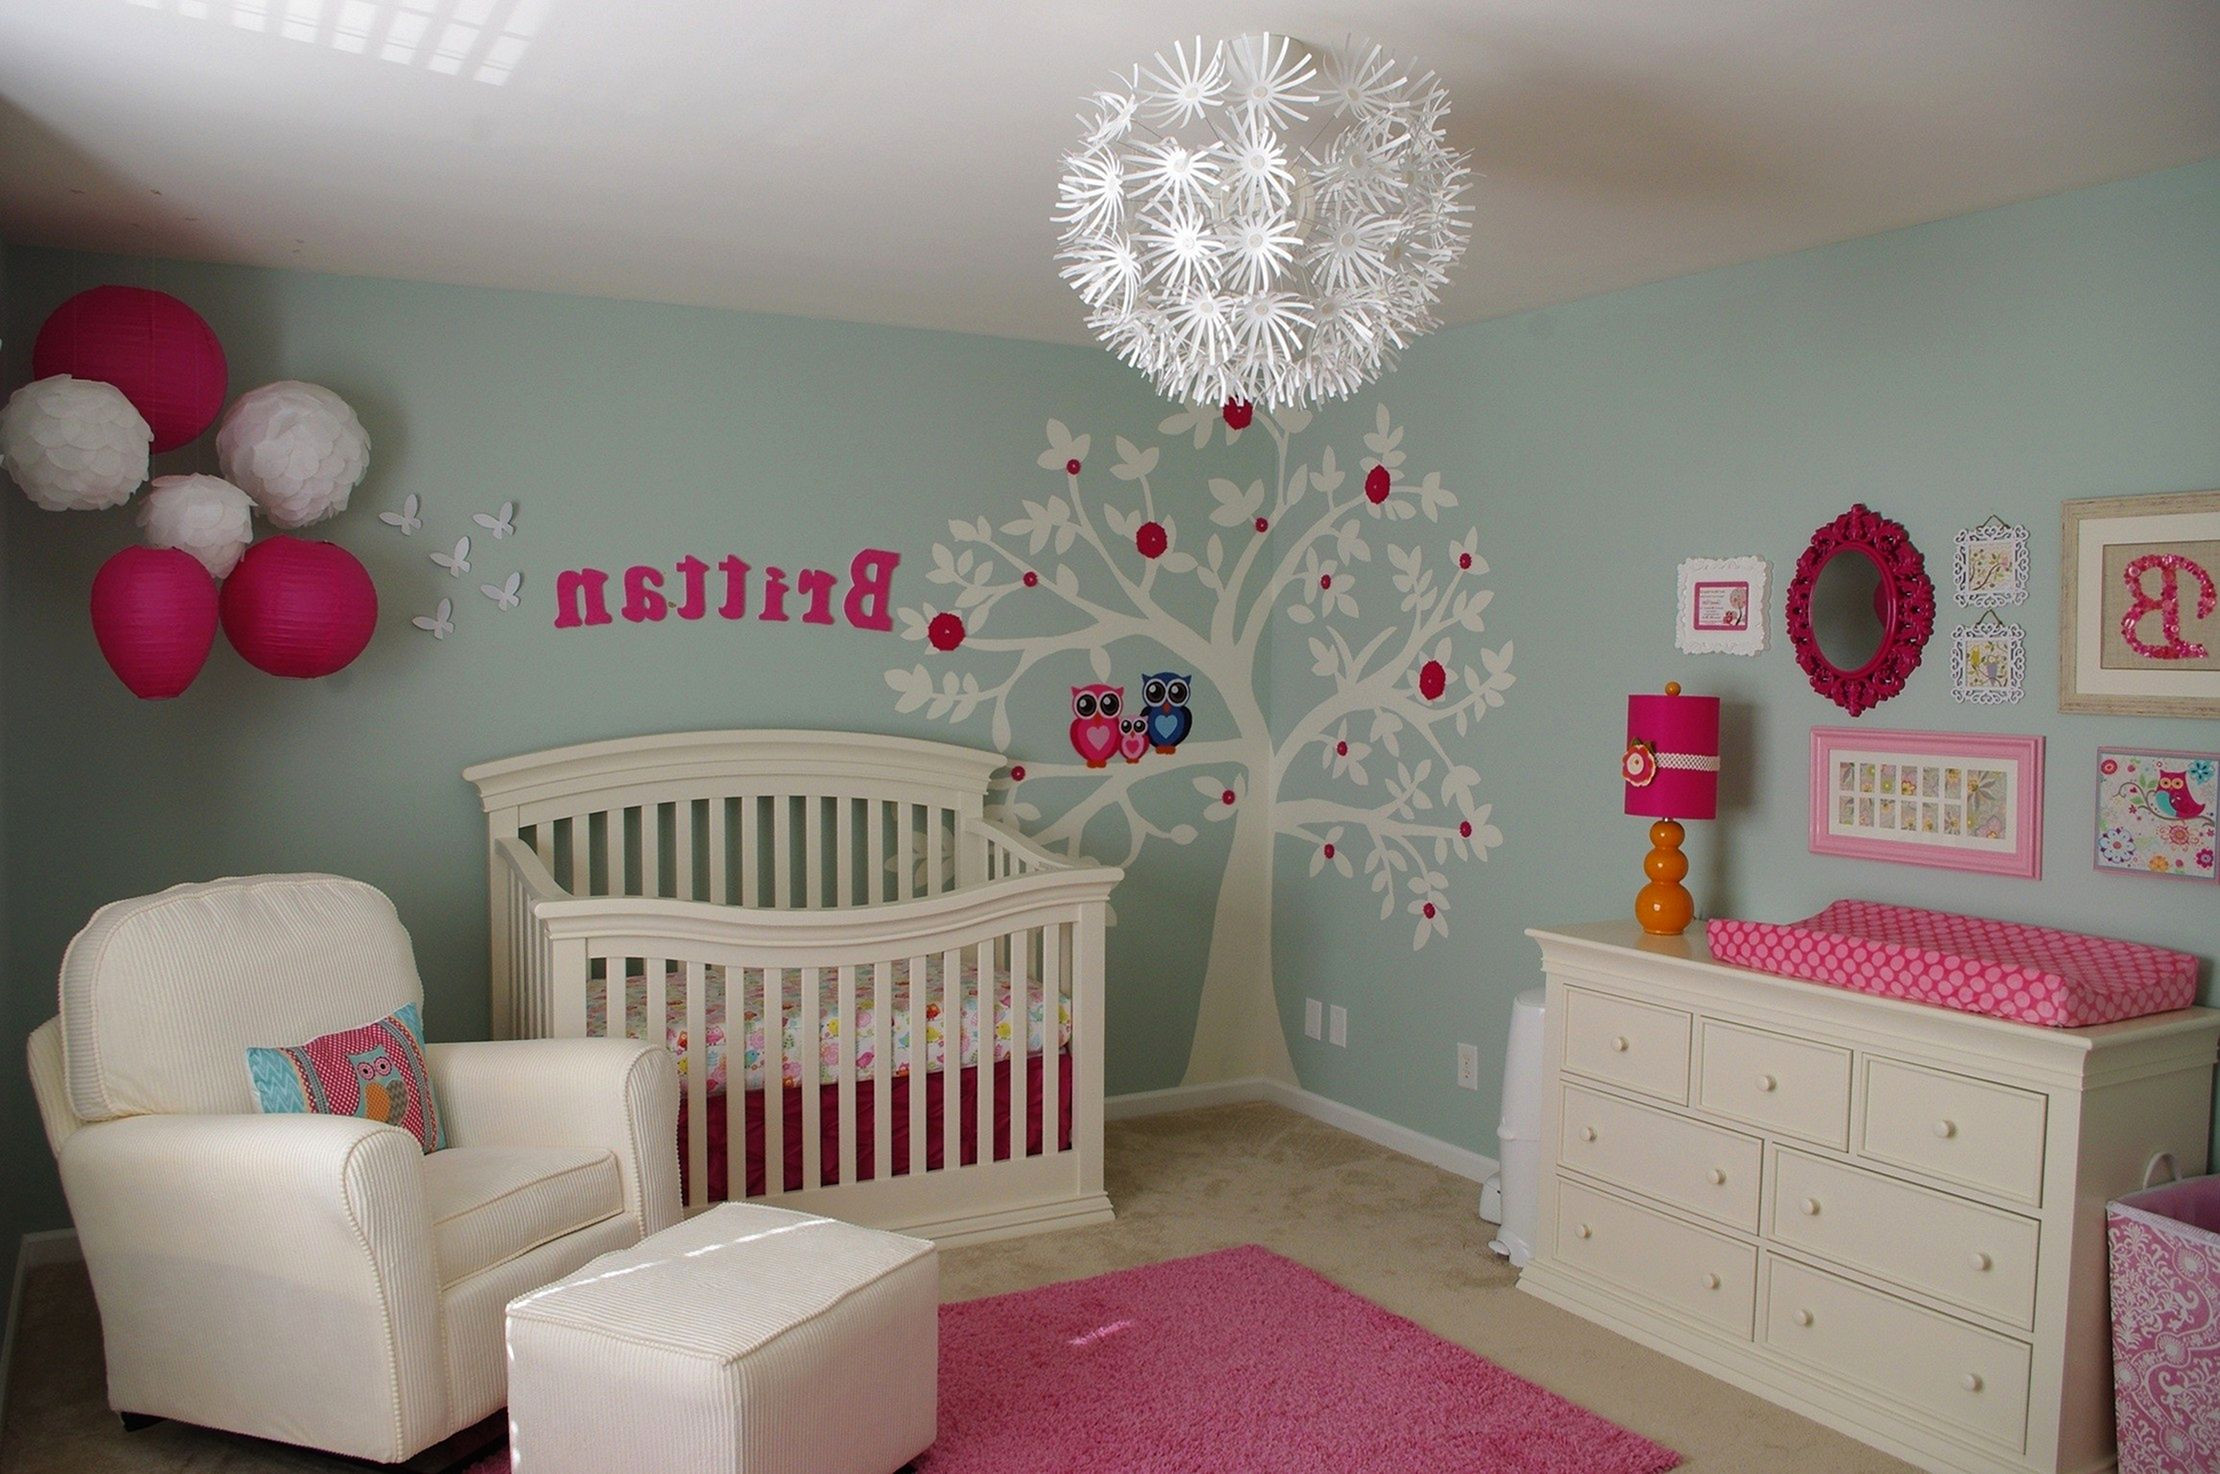 DIY Baby Decorating Ideas
 DIY Baby Room Decor Ideas For Girls DIY Baby Room Decor